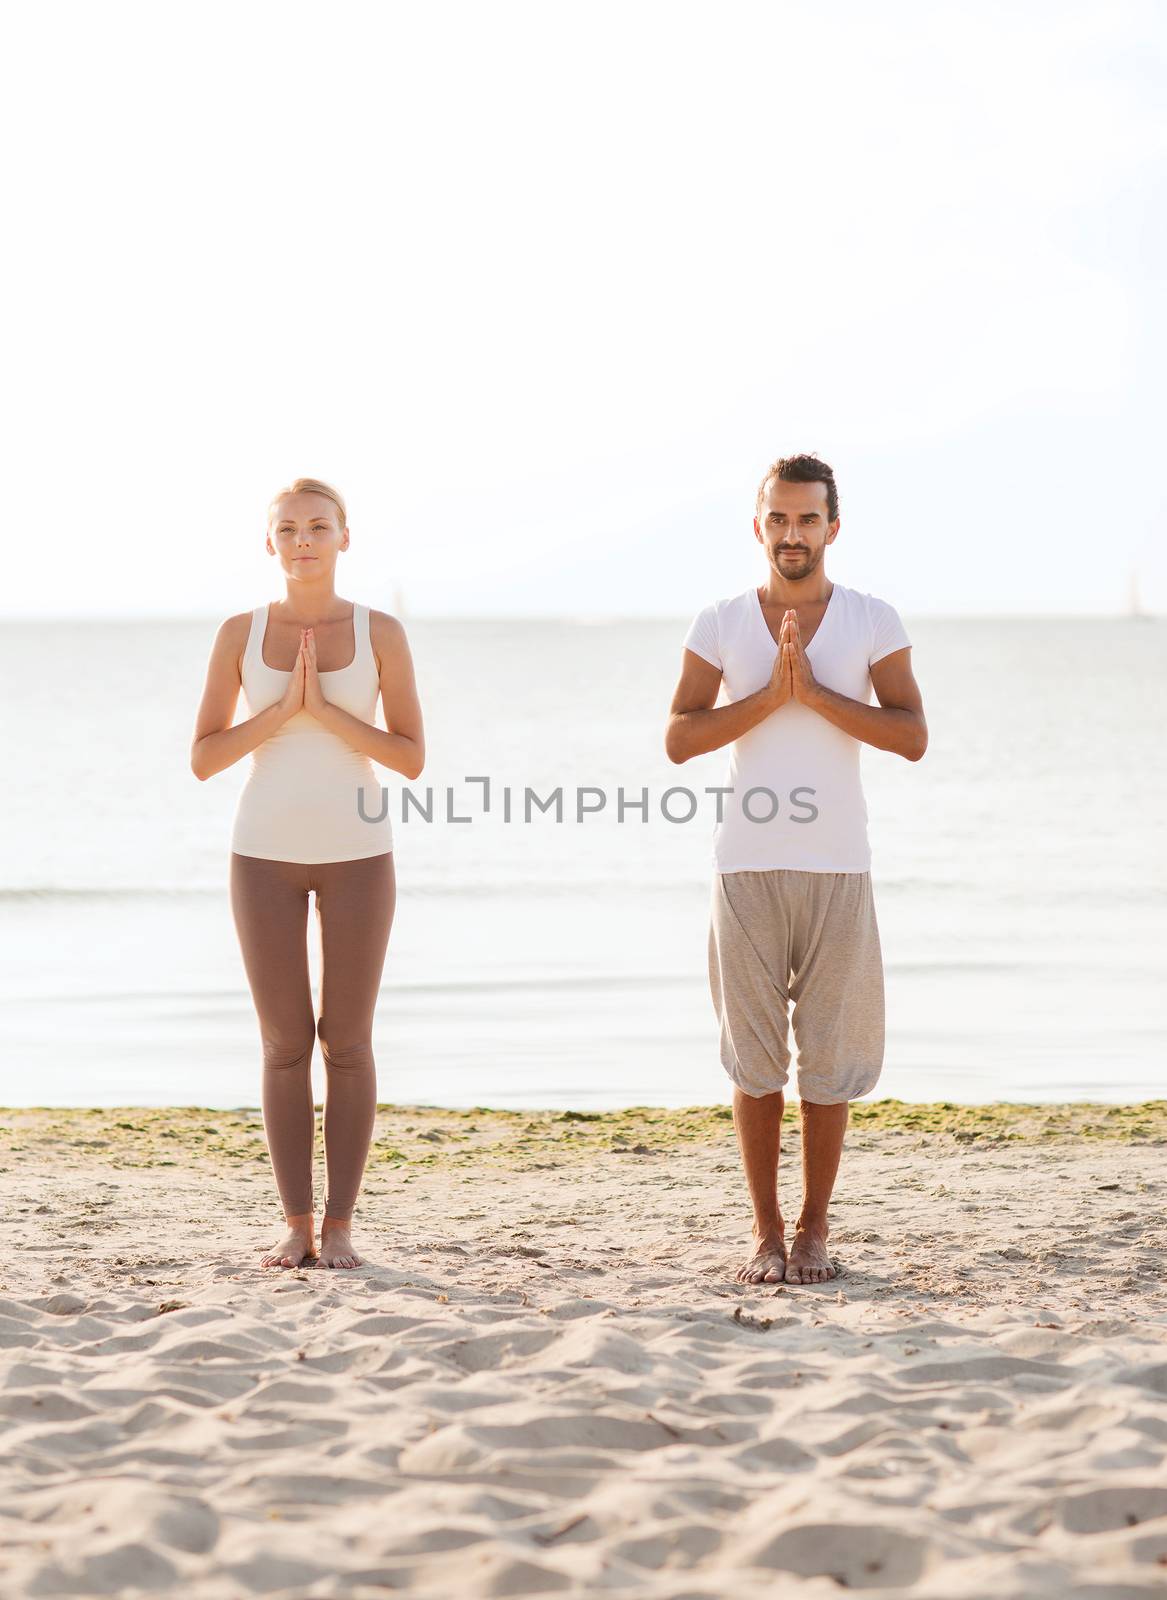 couple making yoga exercises outdoors by dolgachov